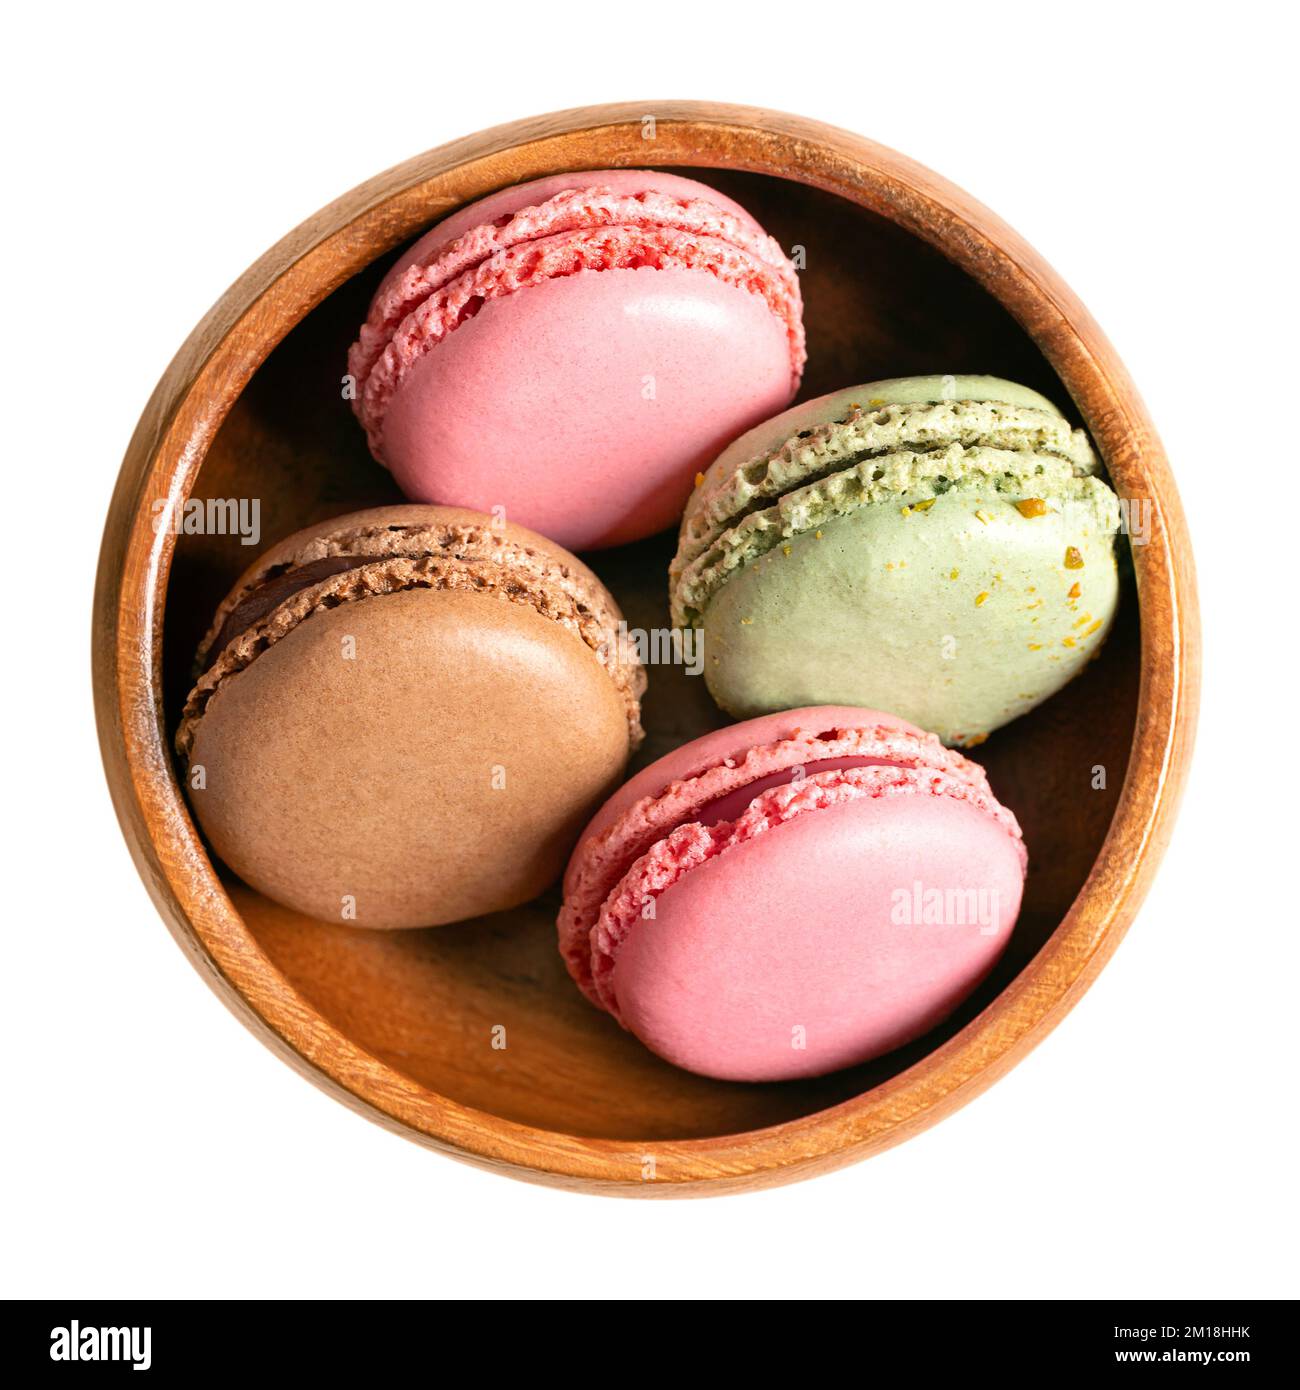 Macarons, macarons français dans un bol en bois. Confiseries sucrées à base de meringue, de style parisien, à base de blanc d'œuf, de sucre, d'amandes et de colorants alimentaires. Banque D'Images